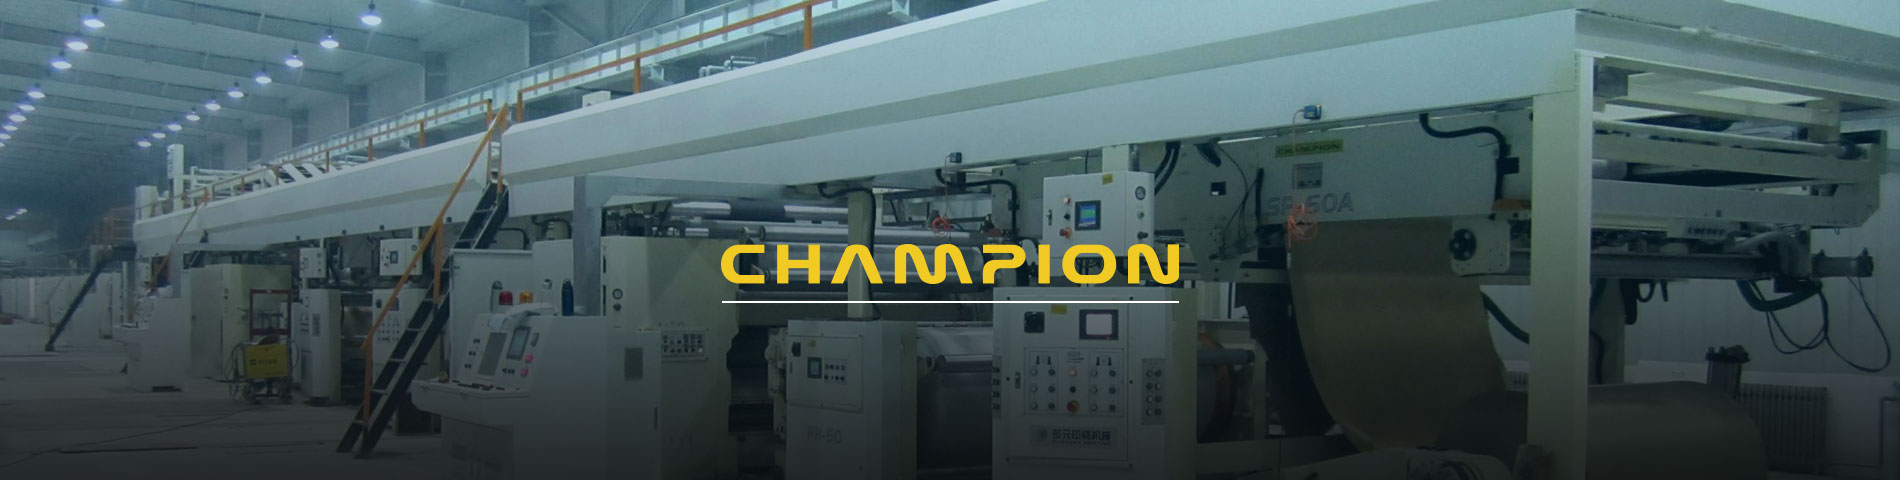 Vô địch Tôn là một Tông sóng chuyên nghiệp Nhà sản xuất thiết bị